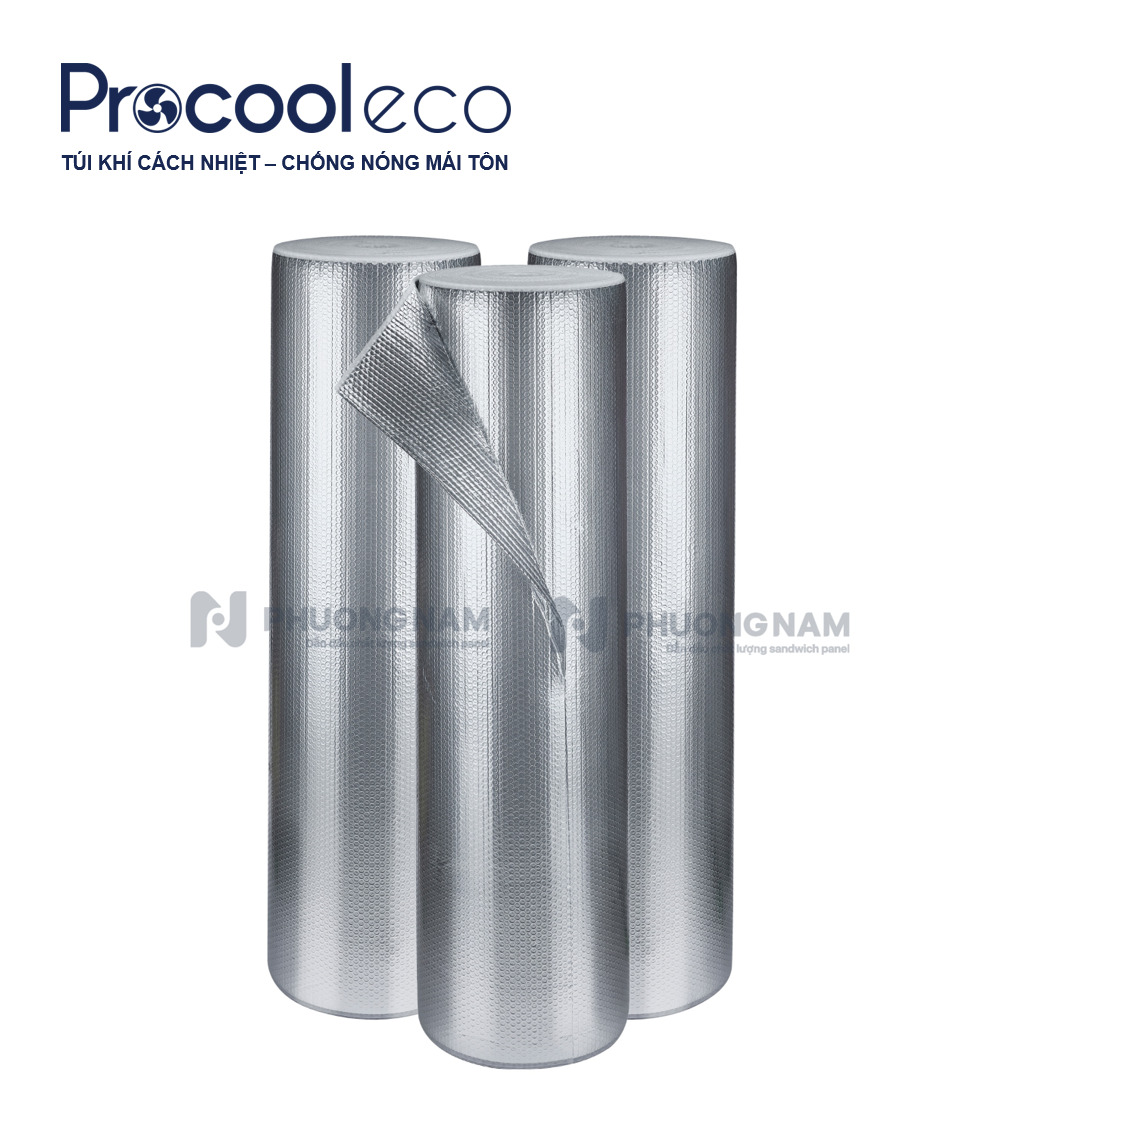 Tấm cách nhiệt túi khí ProCool Eco - Chống nóng mái tôn